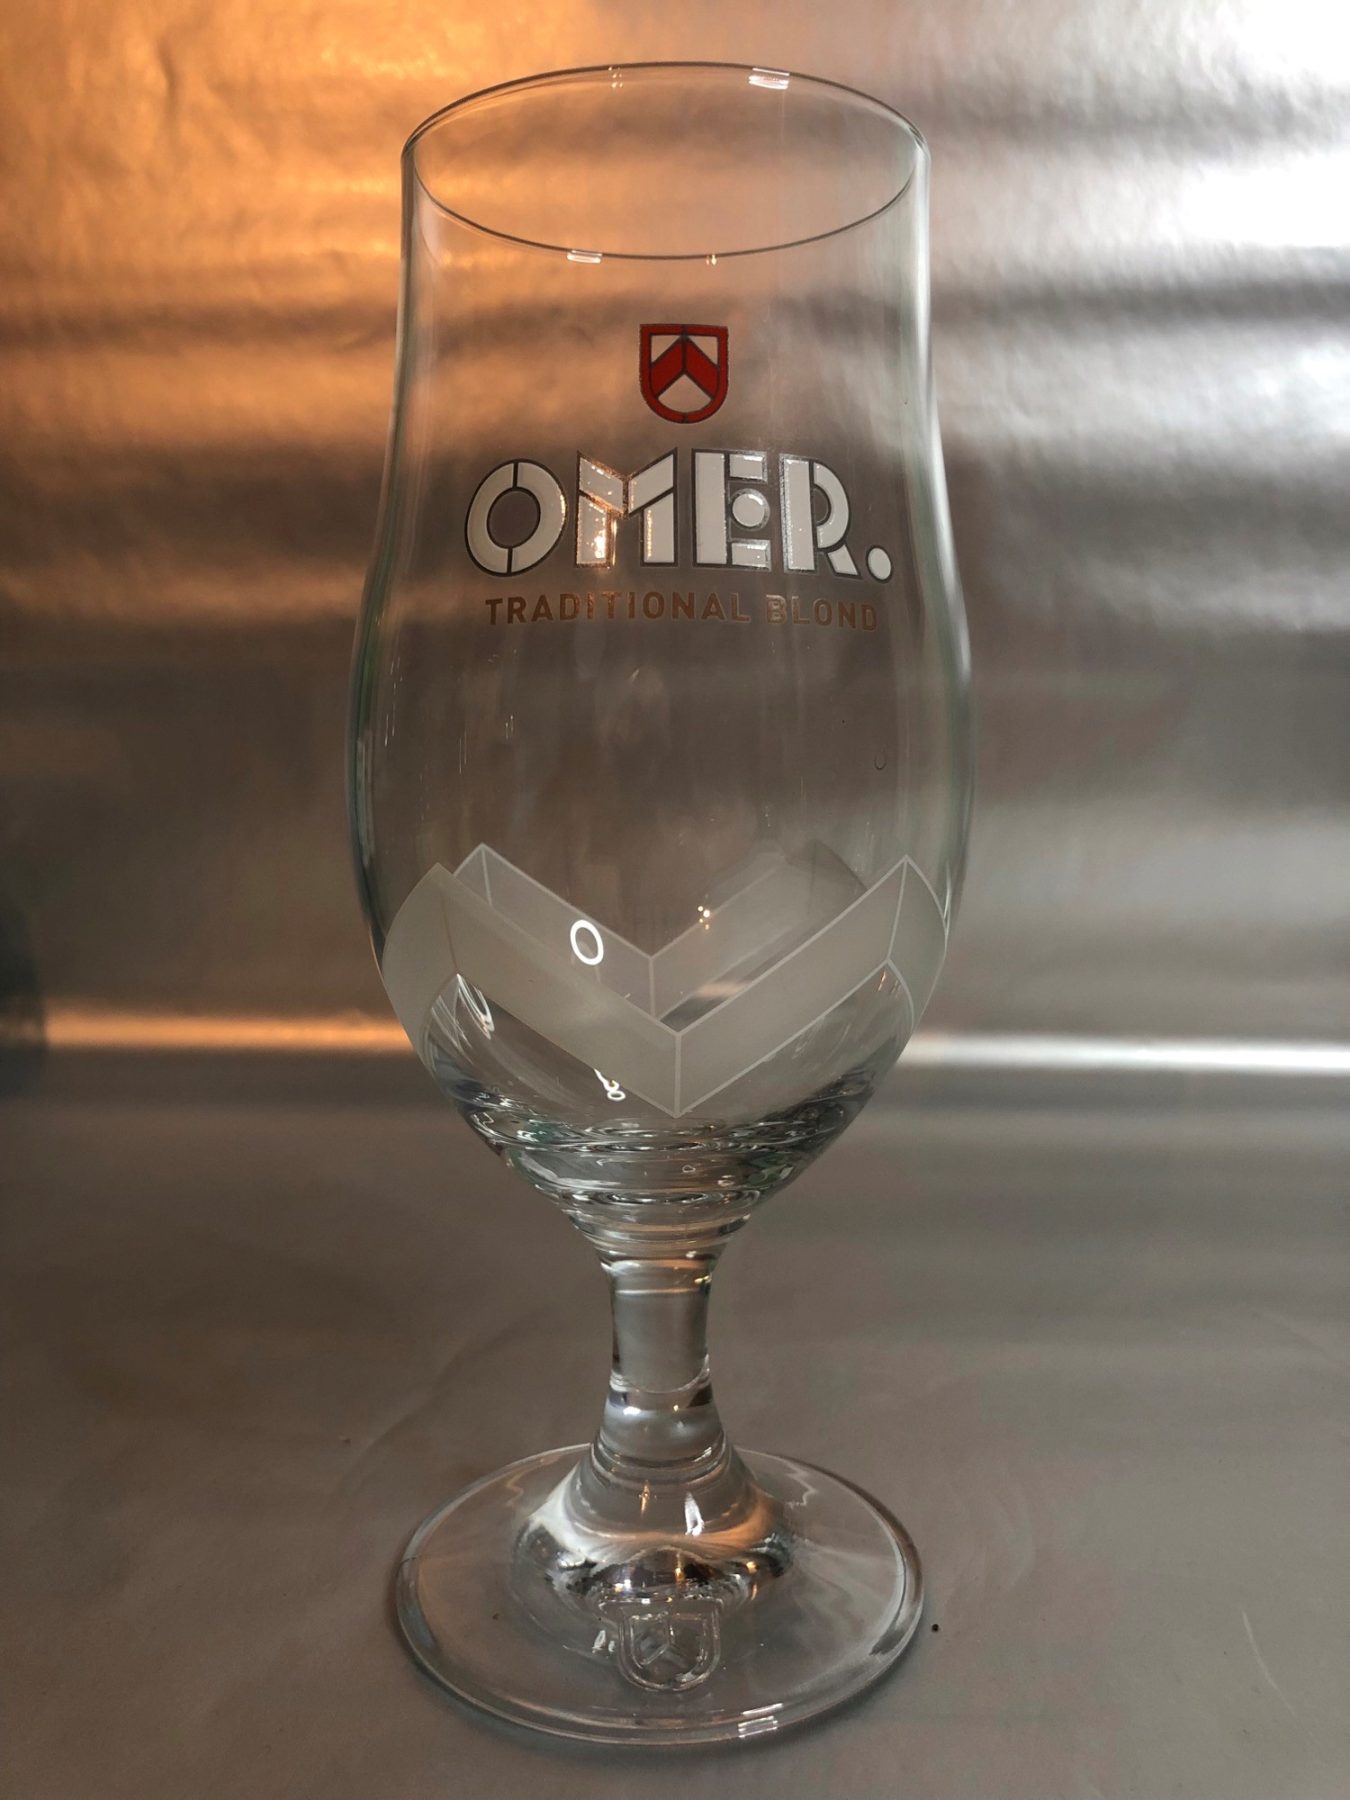 Omer beer glass